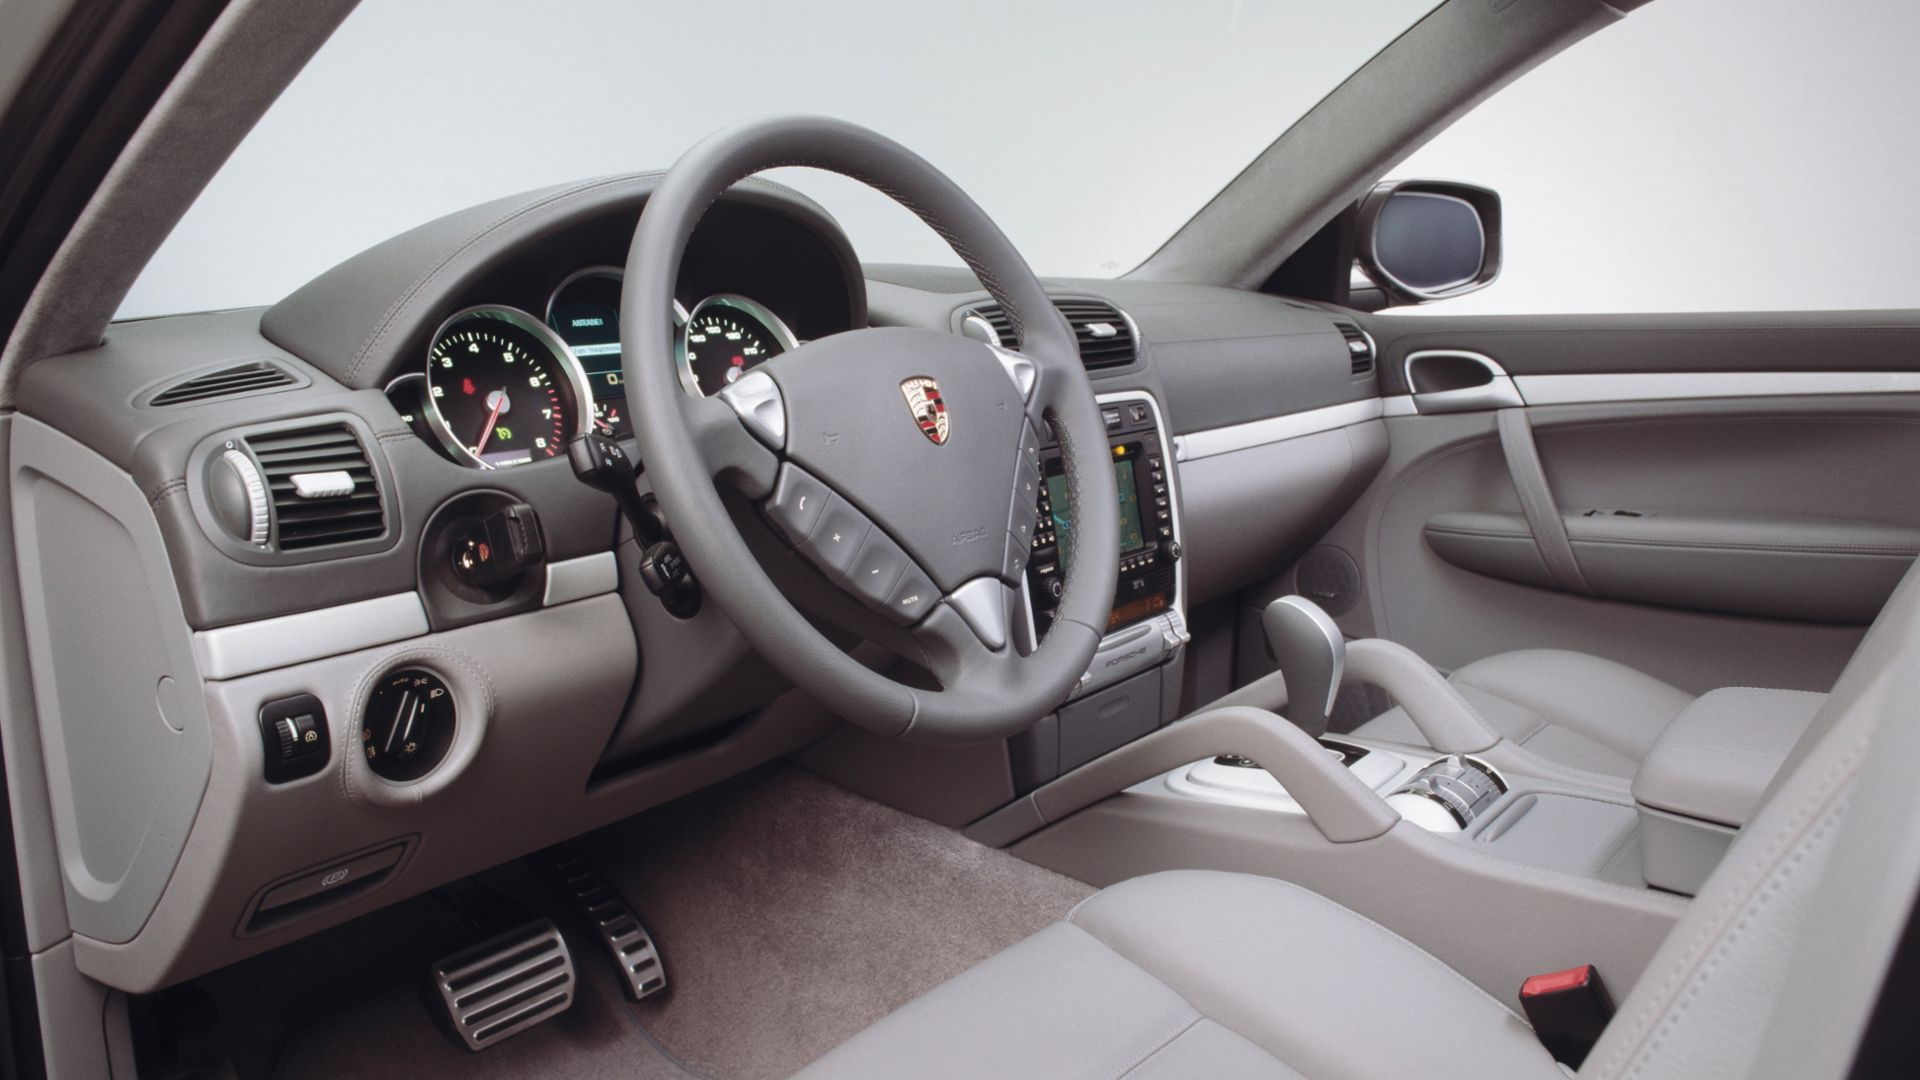 First-generation Porsche Cayenne interior